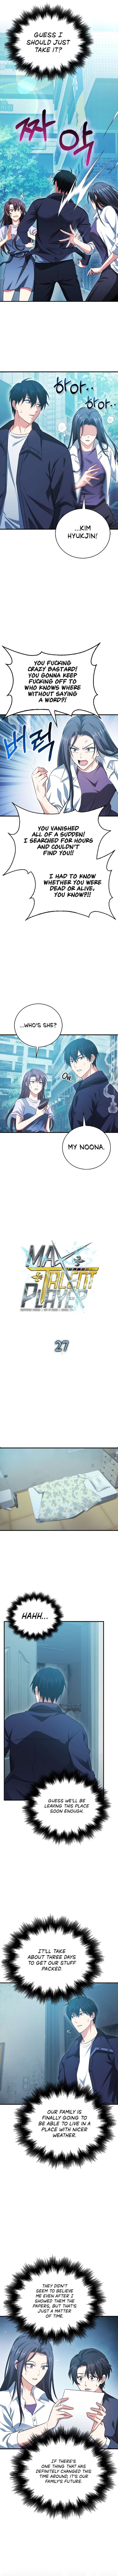 Max Talent Player 27 7